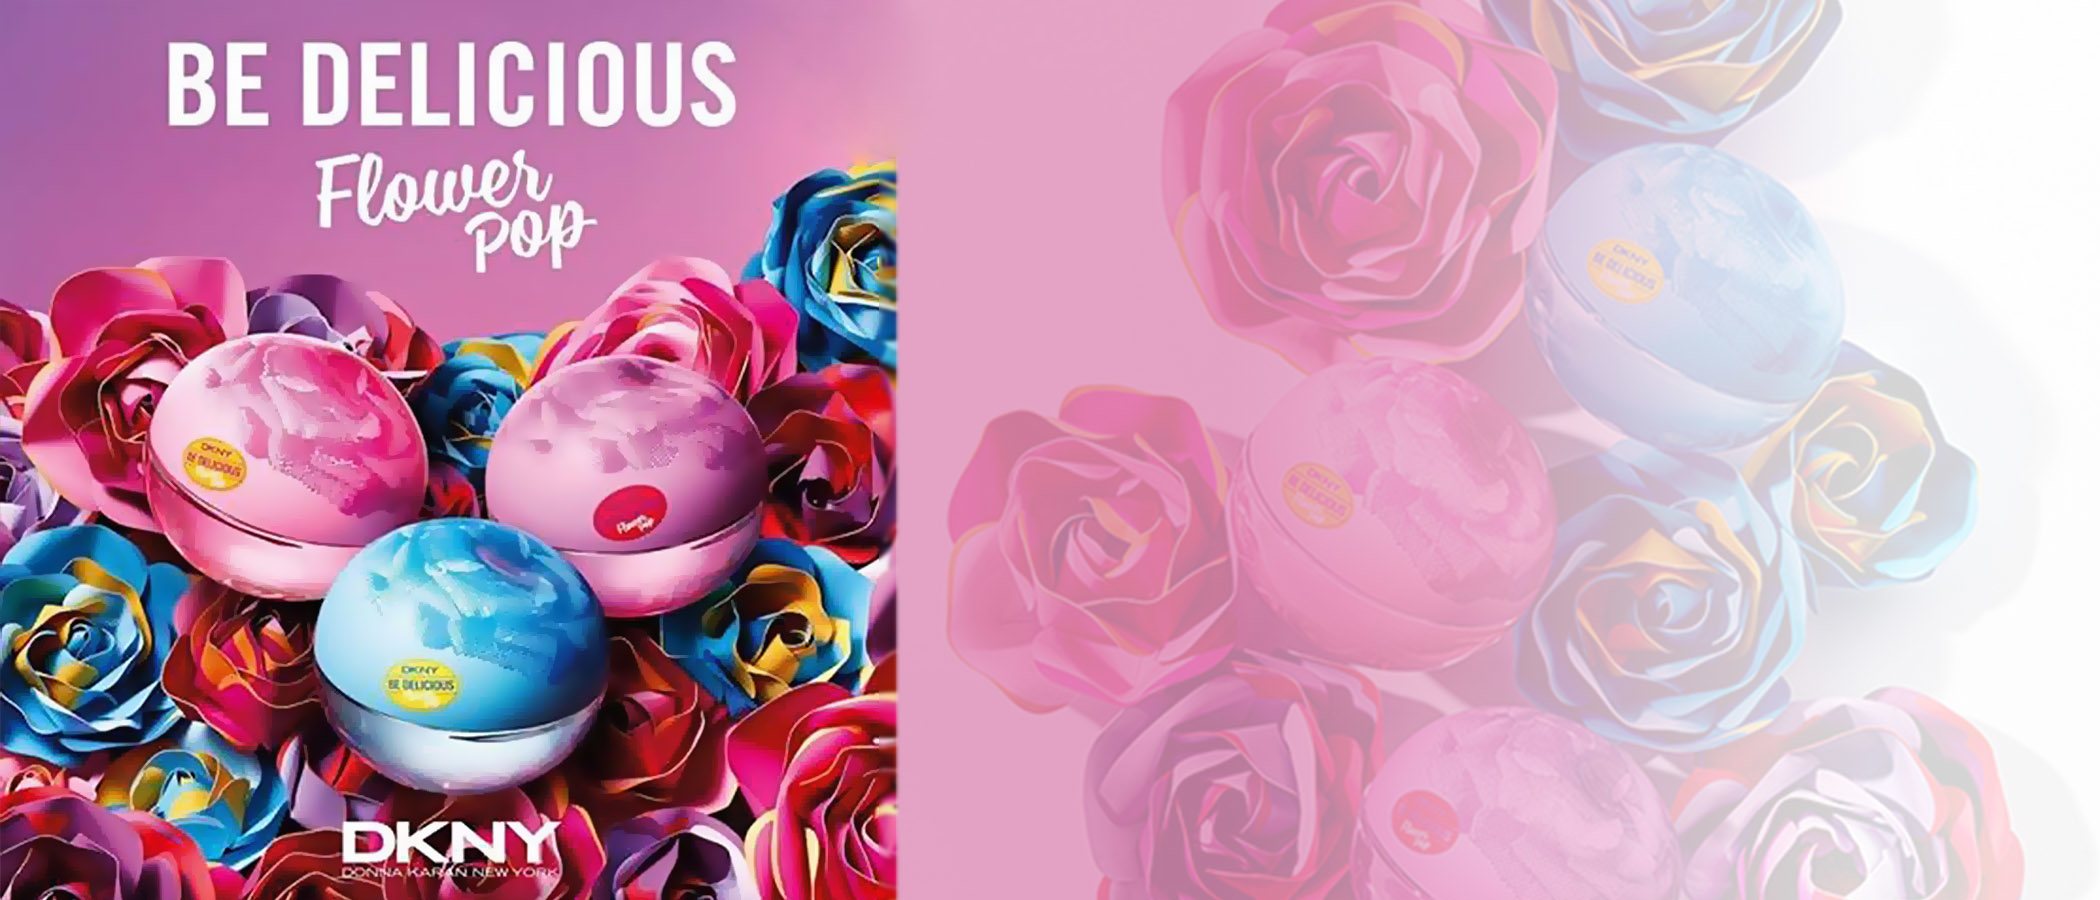 DKNY lanza dentro de la colección 'Be Delicious' su edición limitada más primaveral: 'Flower Pop Collection'